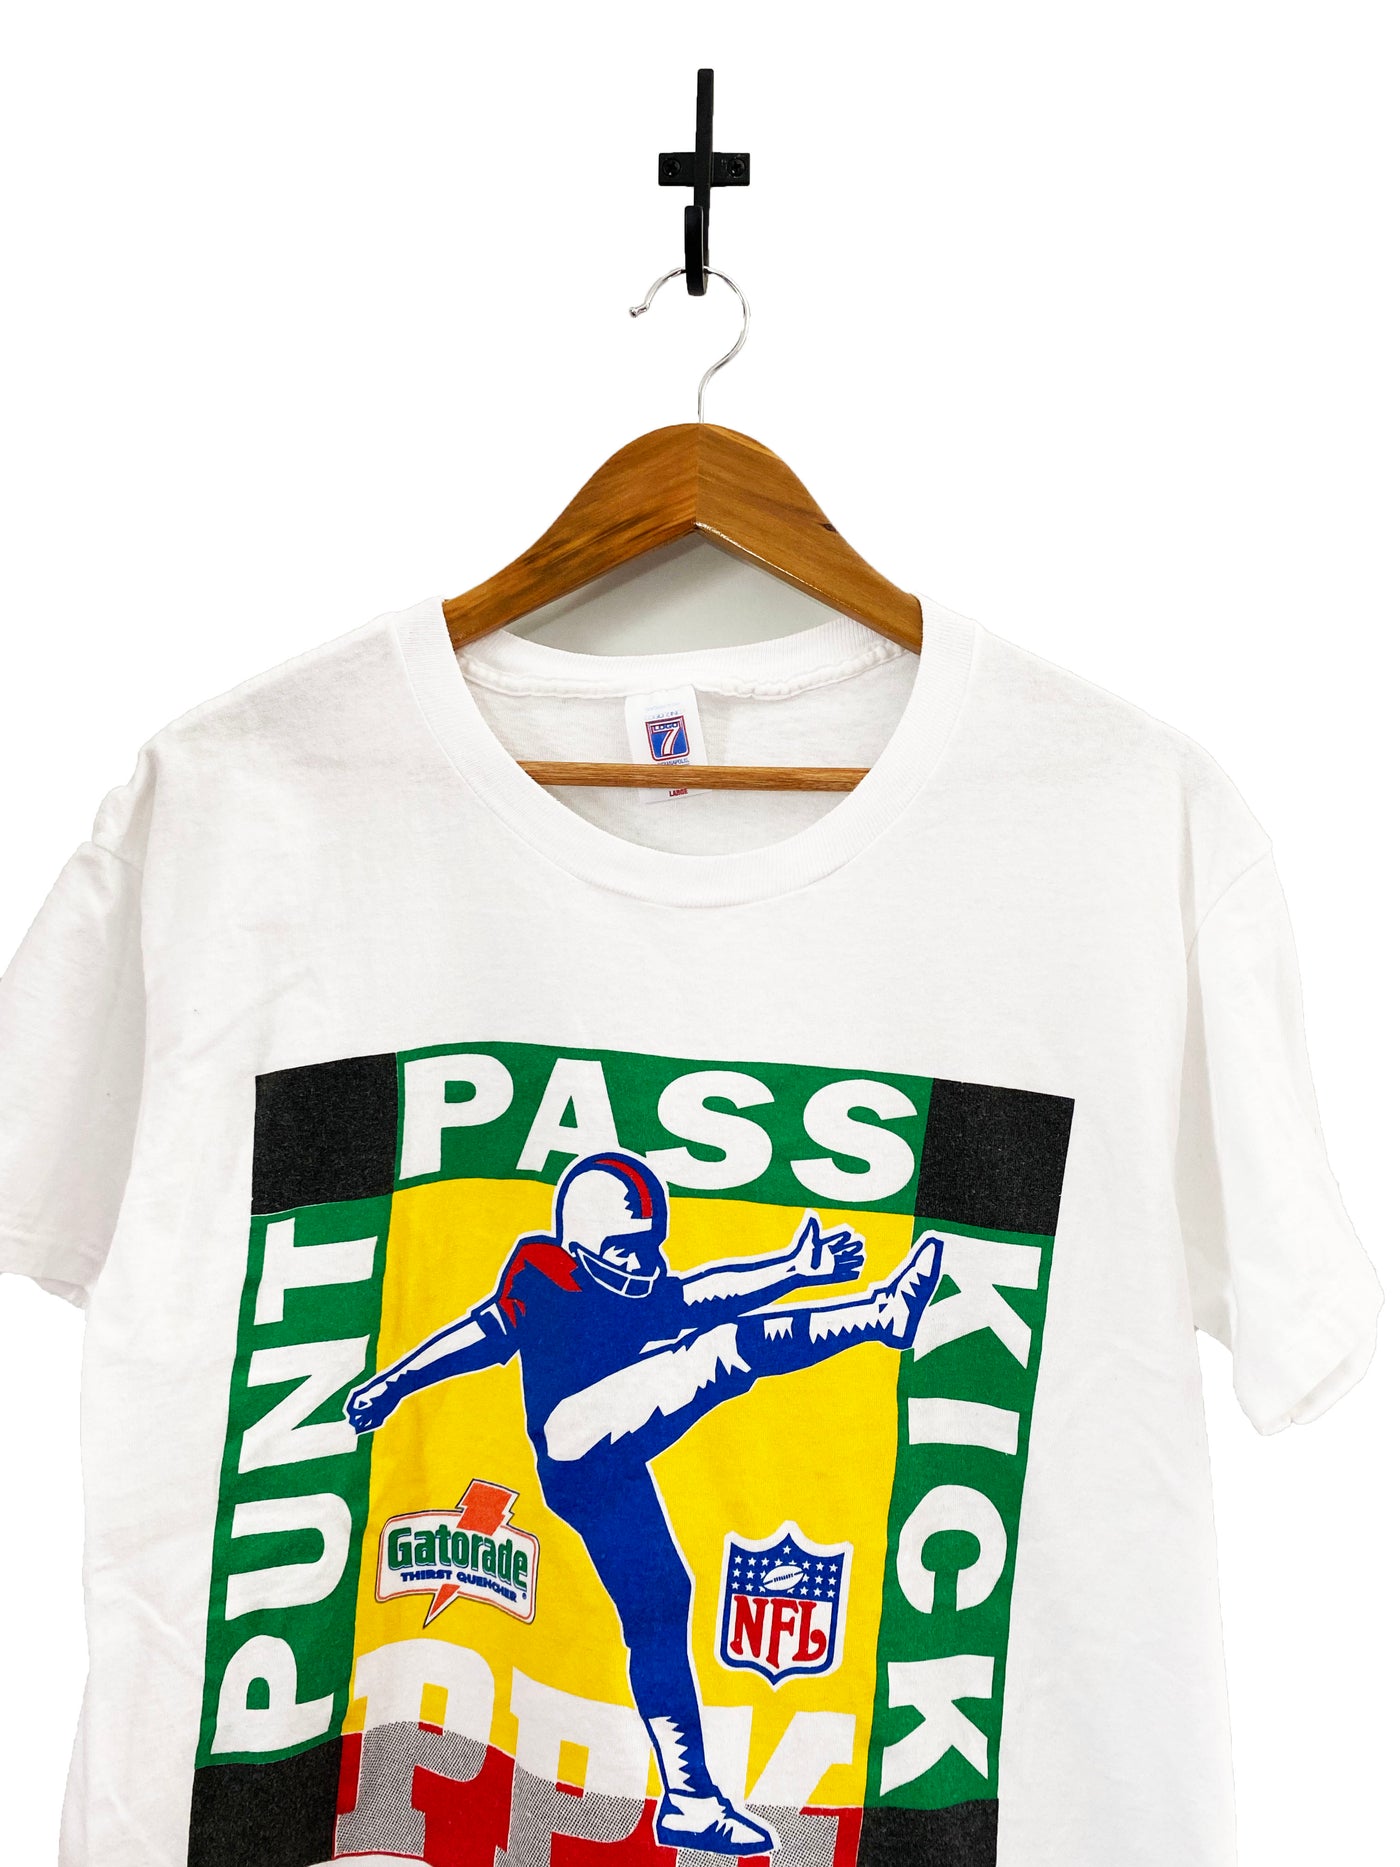 Vintage 90s PPK NFL T-Shirt